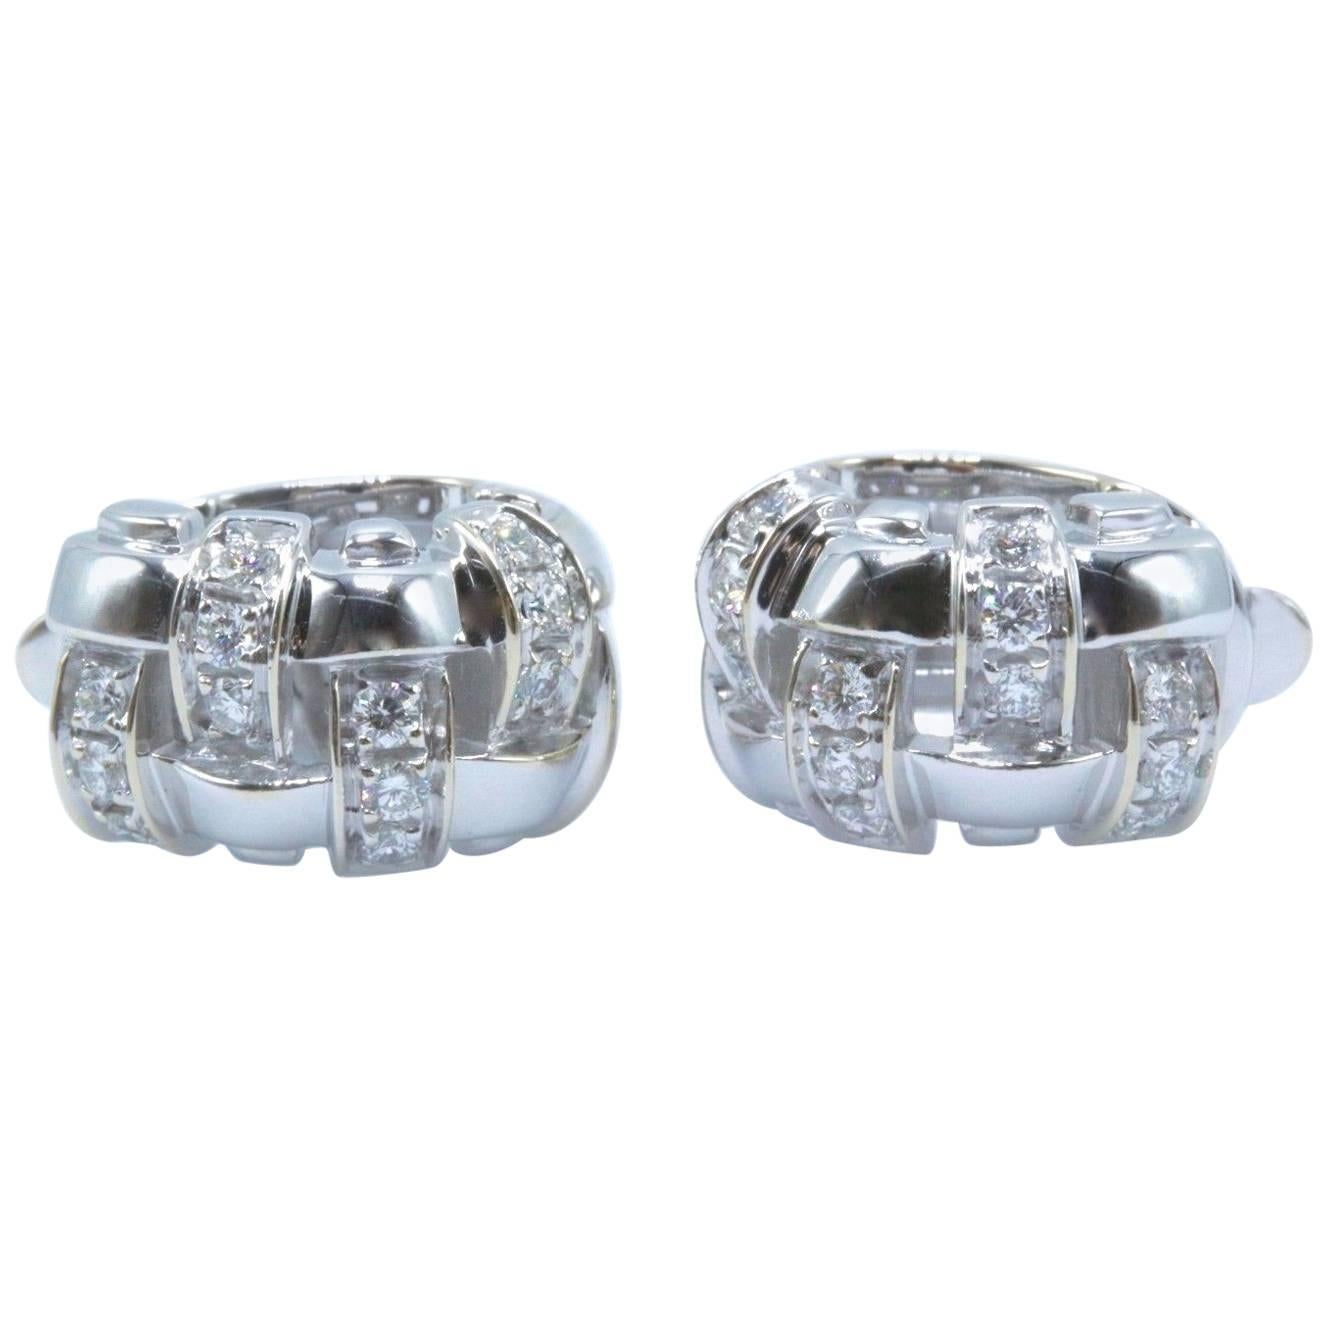 Tiffany & Co. Vannerie Boucles d'oreilles Basket Weave en or blanc 18 carats et diamants